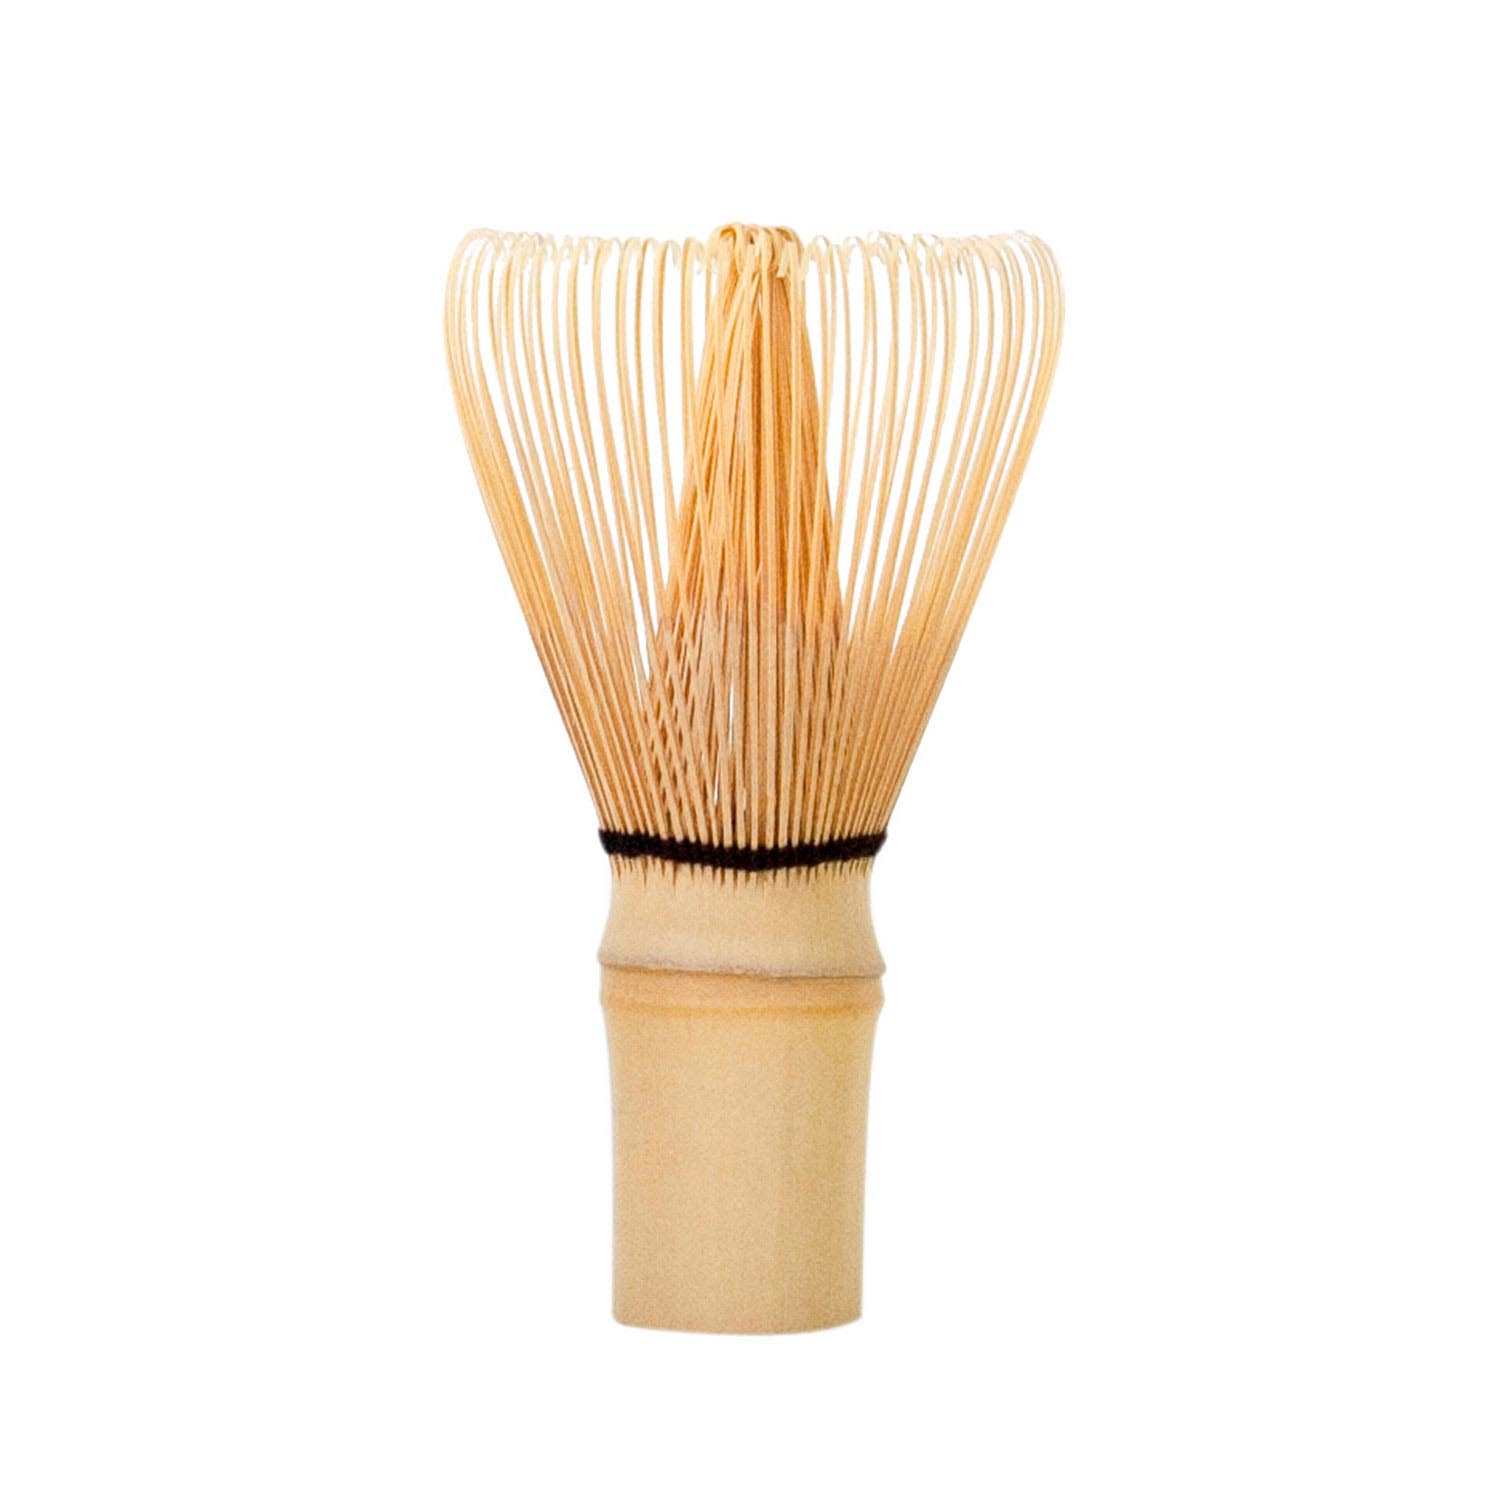 Chasen/Frustino in bambù per tè Matcha 10,5 cm Wollenhaupt 41154 